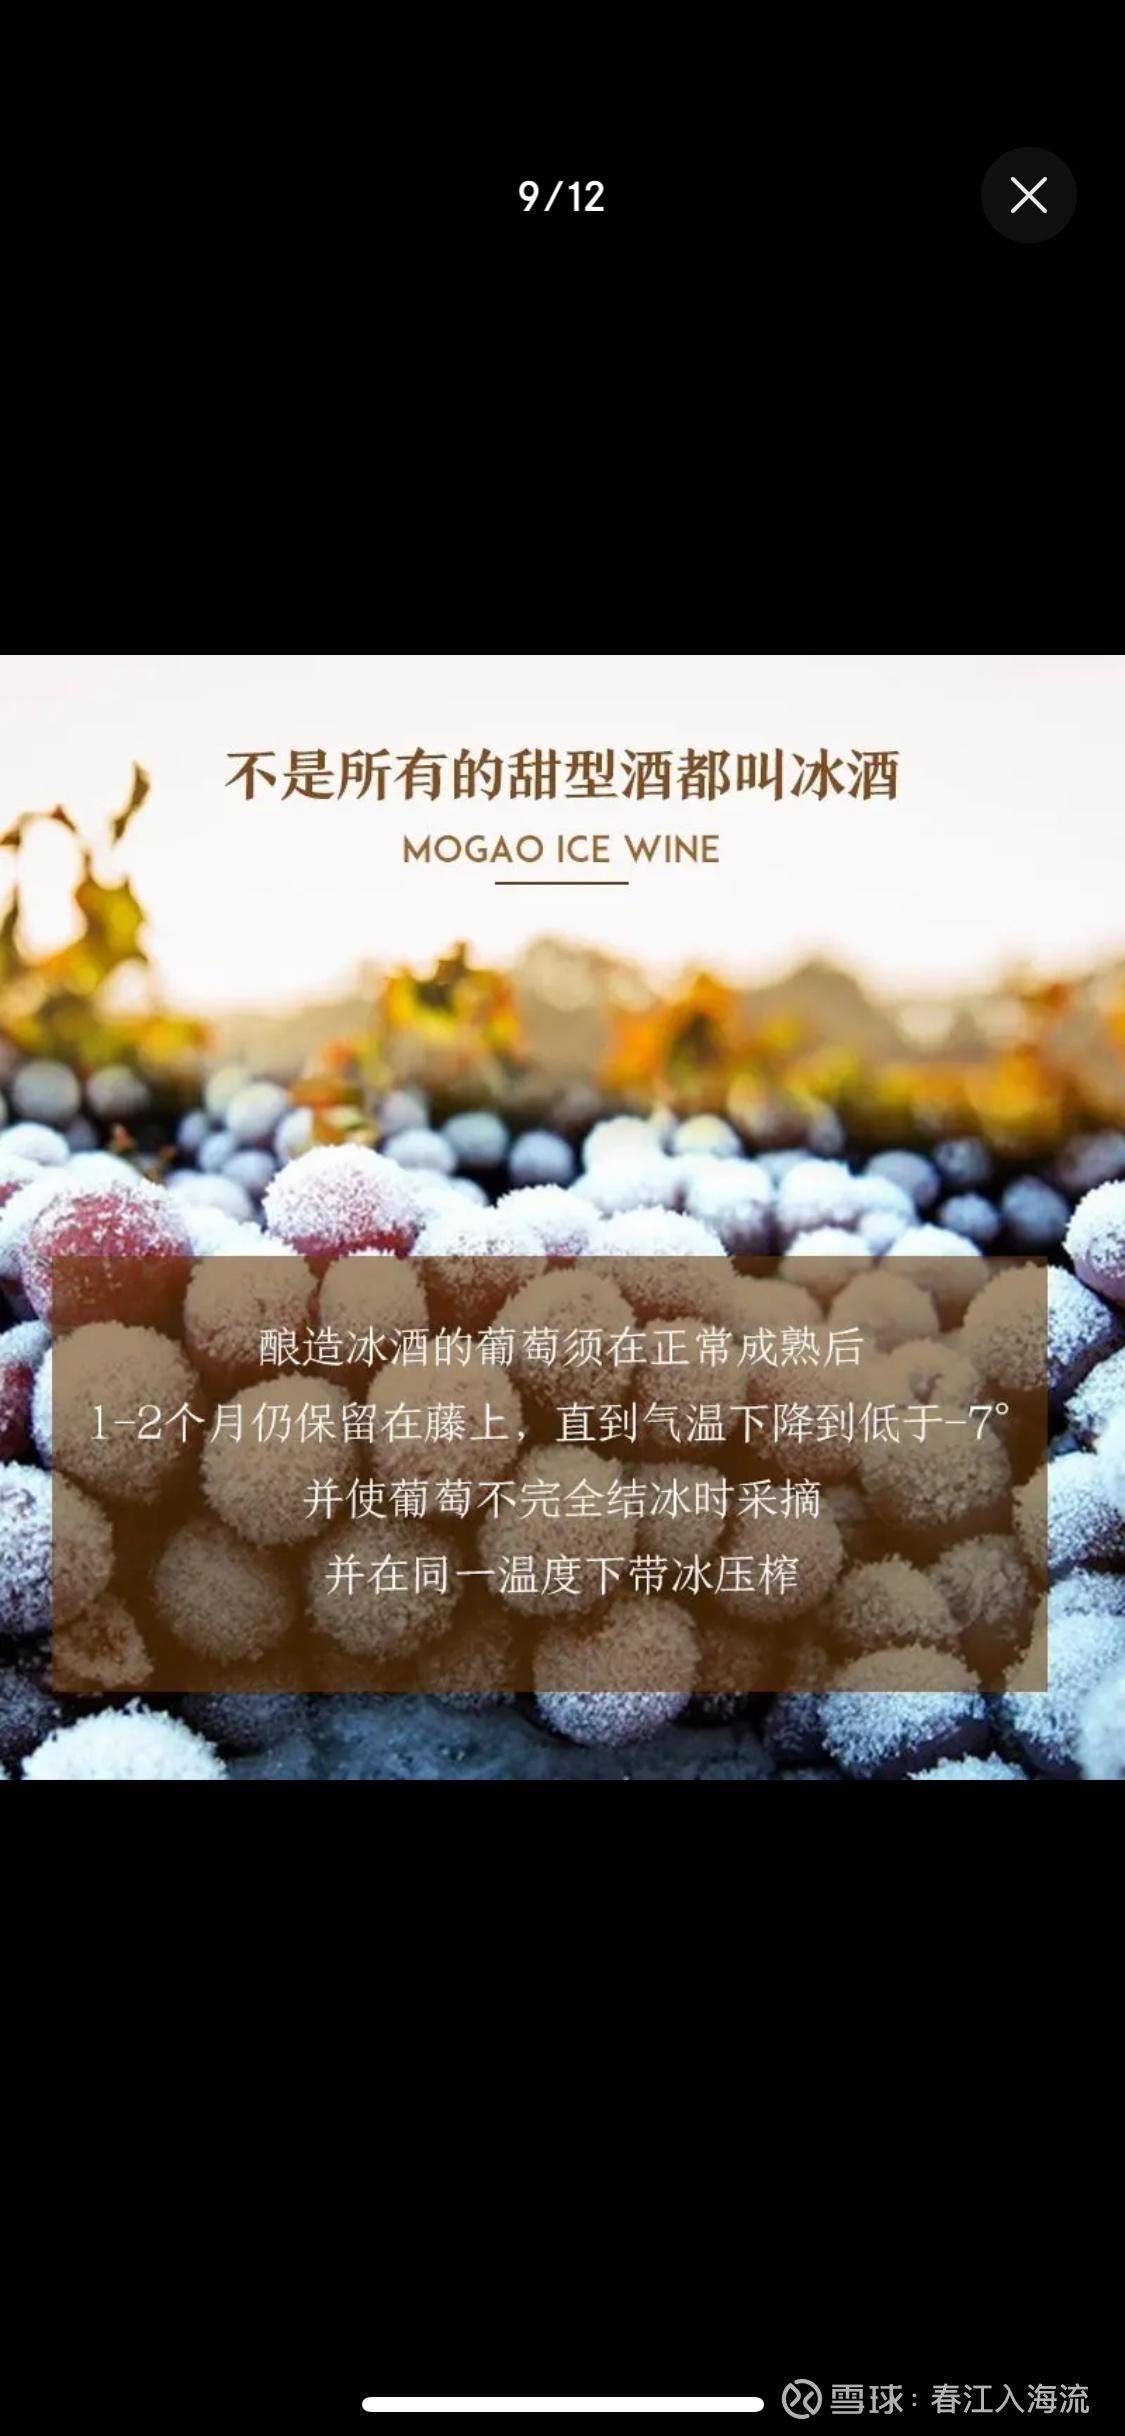 莫高冰葡萄酒被确定为钓鱼台国宾